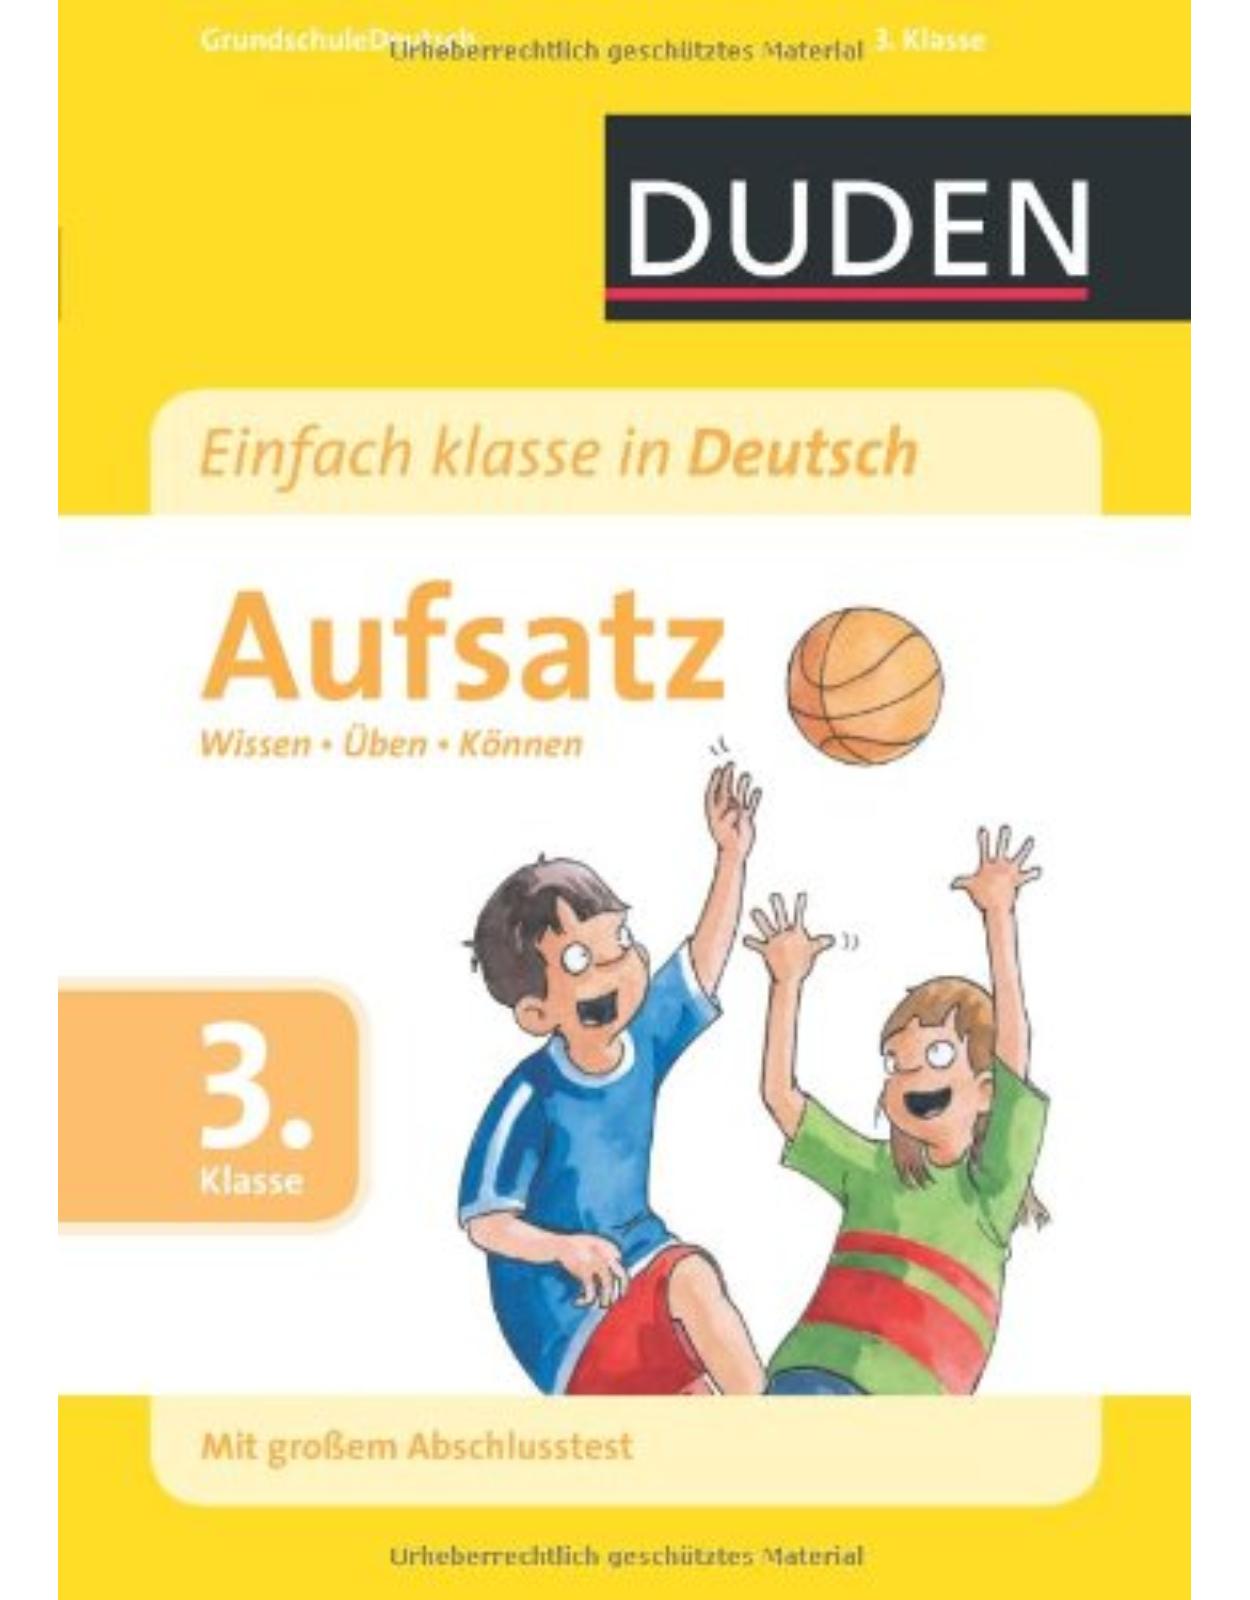 Duden Einfach klasse in Deutsch Aufsatz 3. Klasse: Wissen - Üben - Können